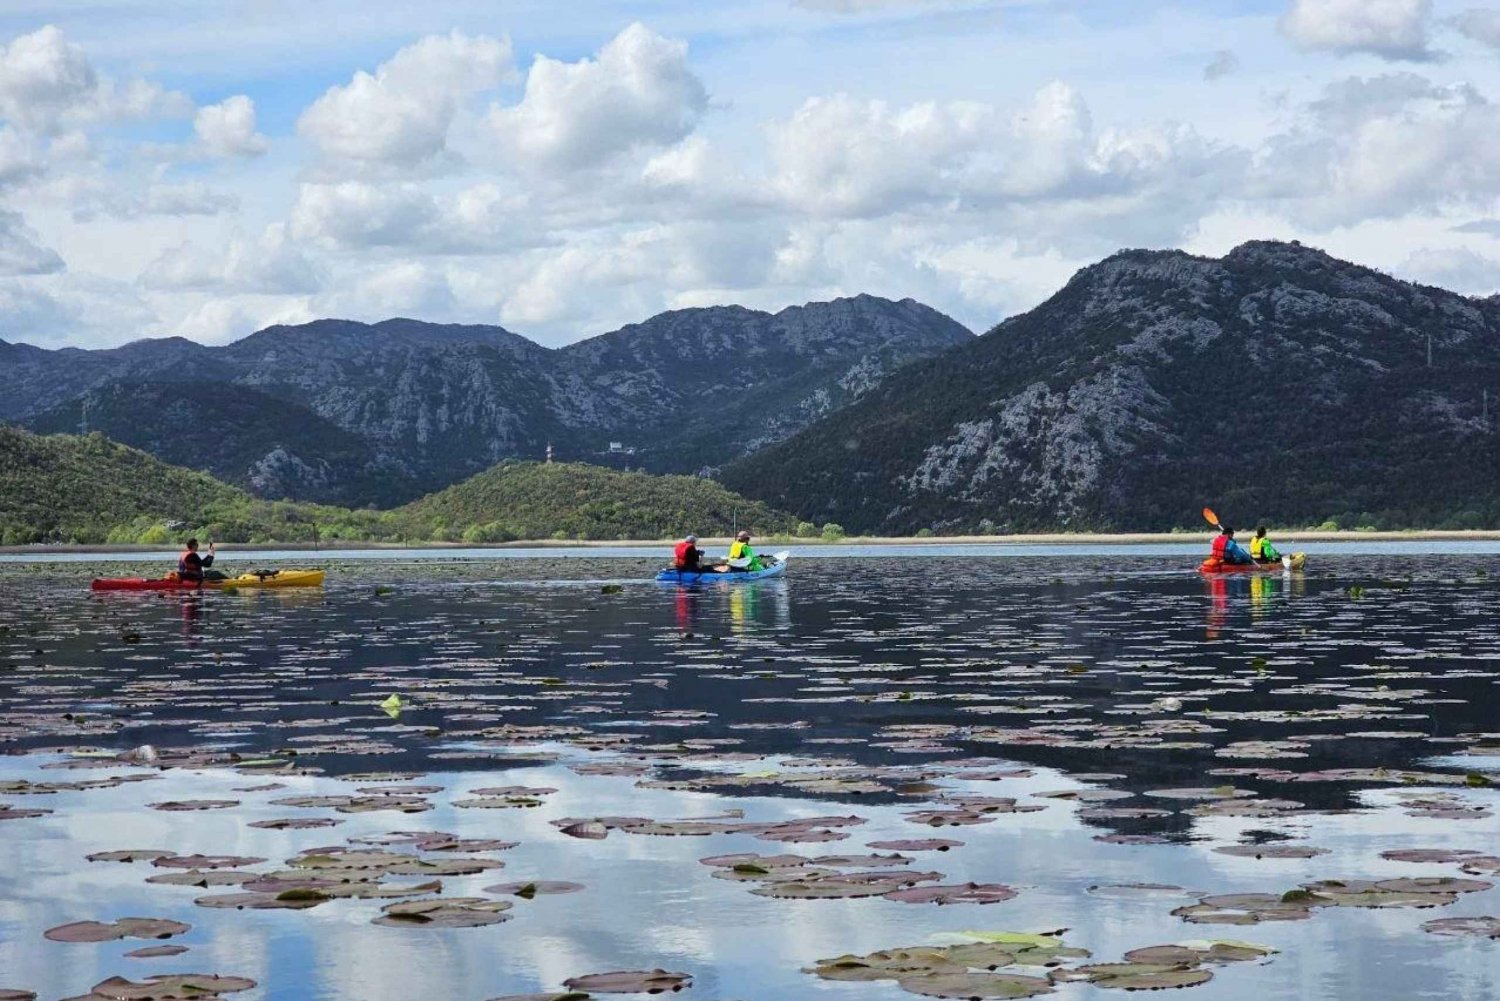 Fra Budva: En dagstur i kajakk på Skadarsjøen